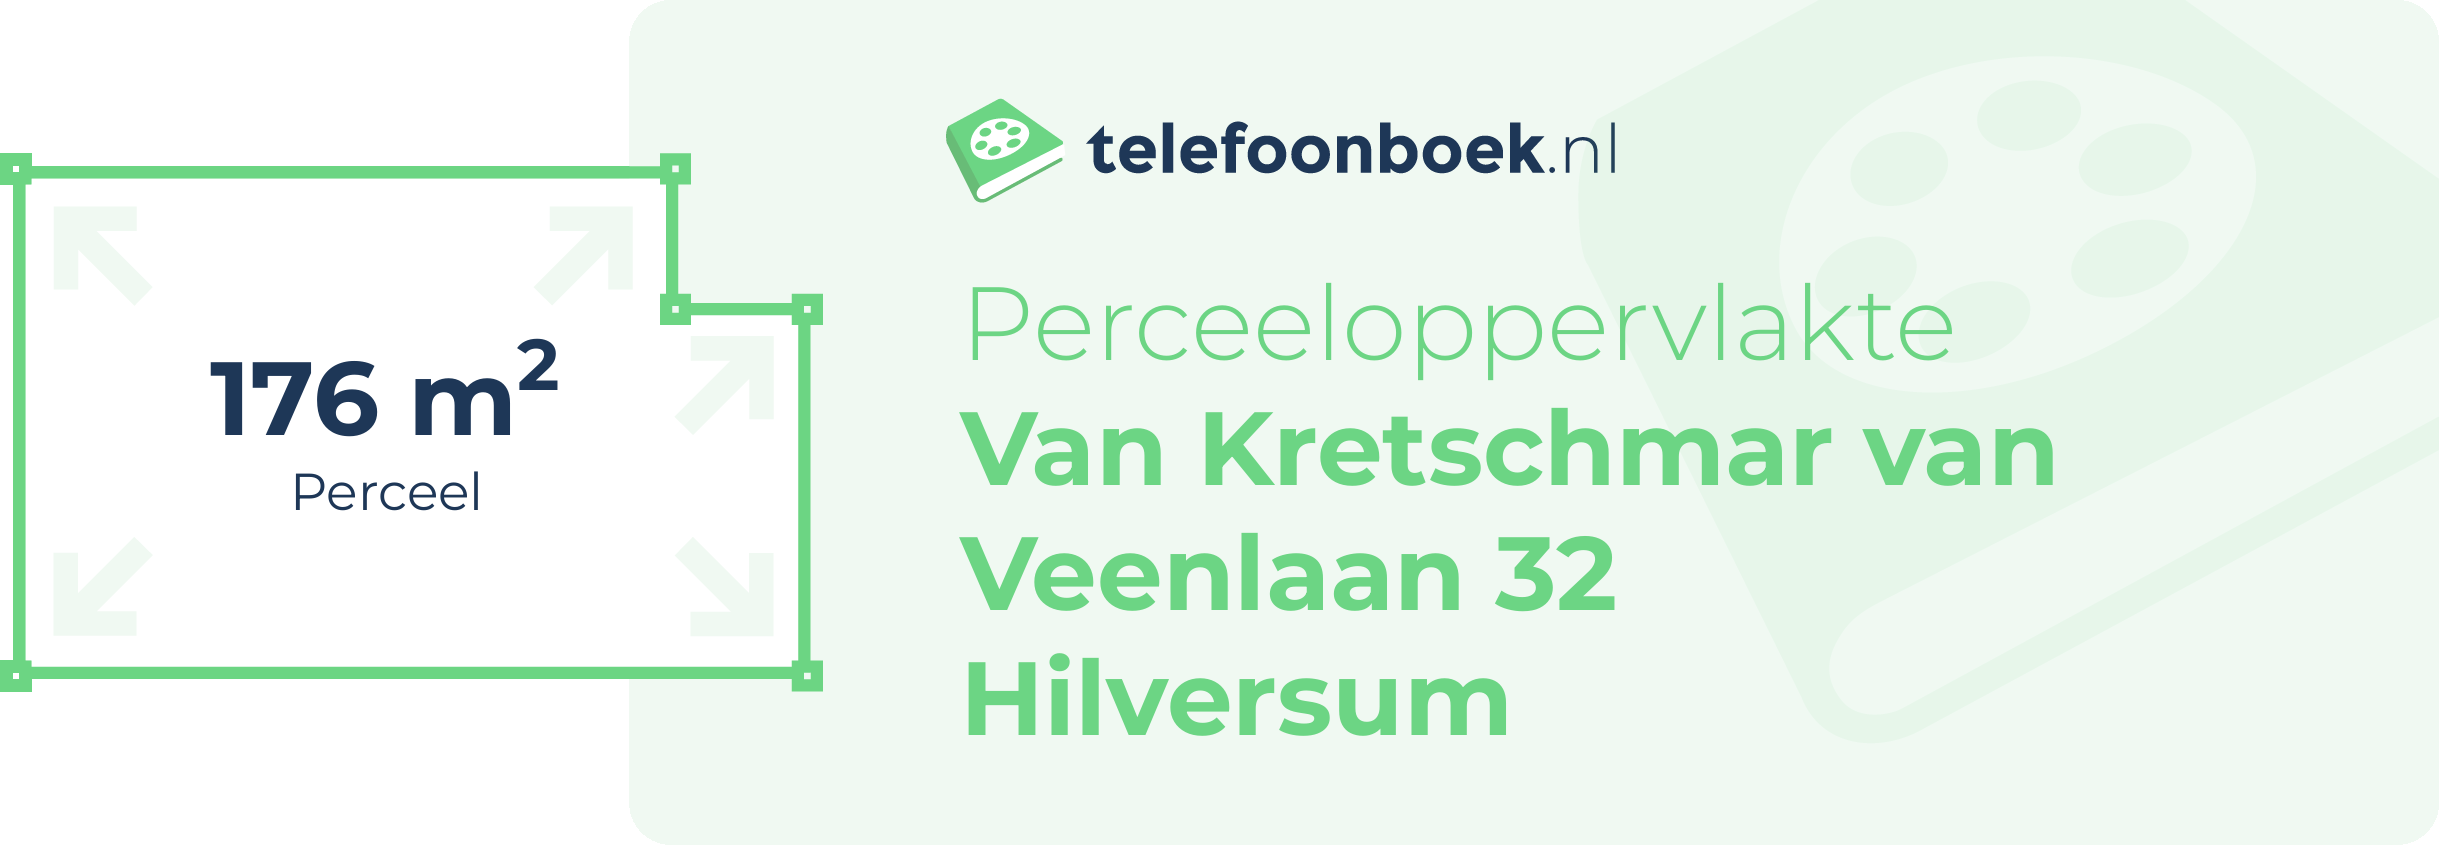 Perceeloppervlakte Van Kretschmar Van Veenlaan 32 Hilversum